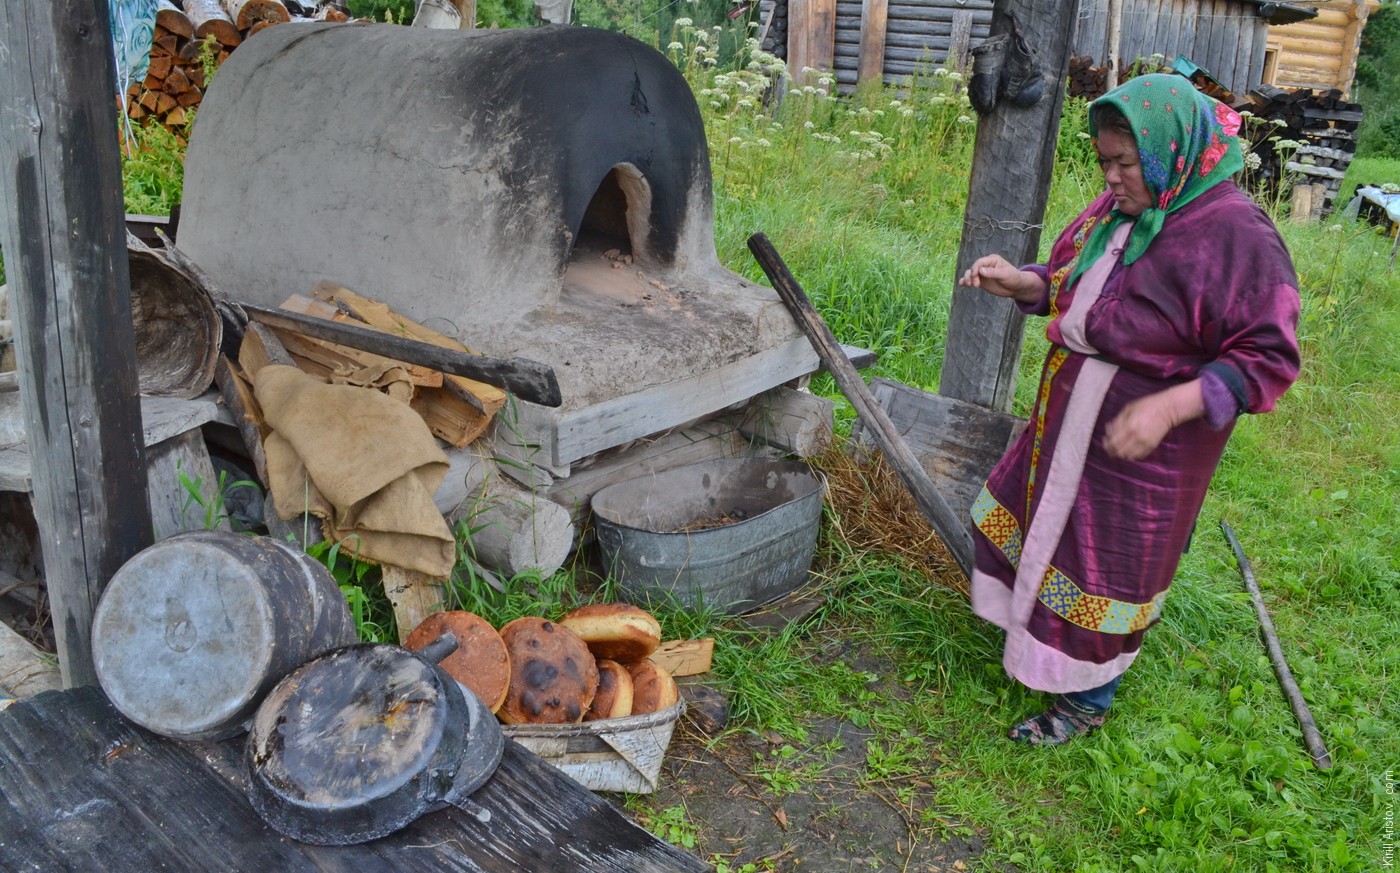 Елена вынимает хлеб из печи, Location: Деревня Ярсино на реке Демьянка. Уватский район, Тюменская область, Россия.